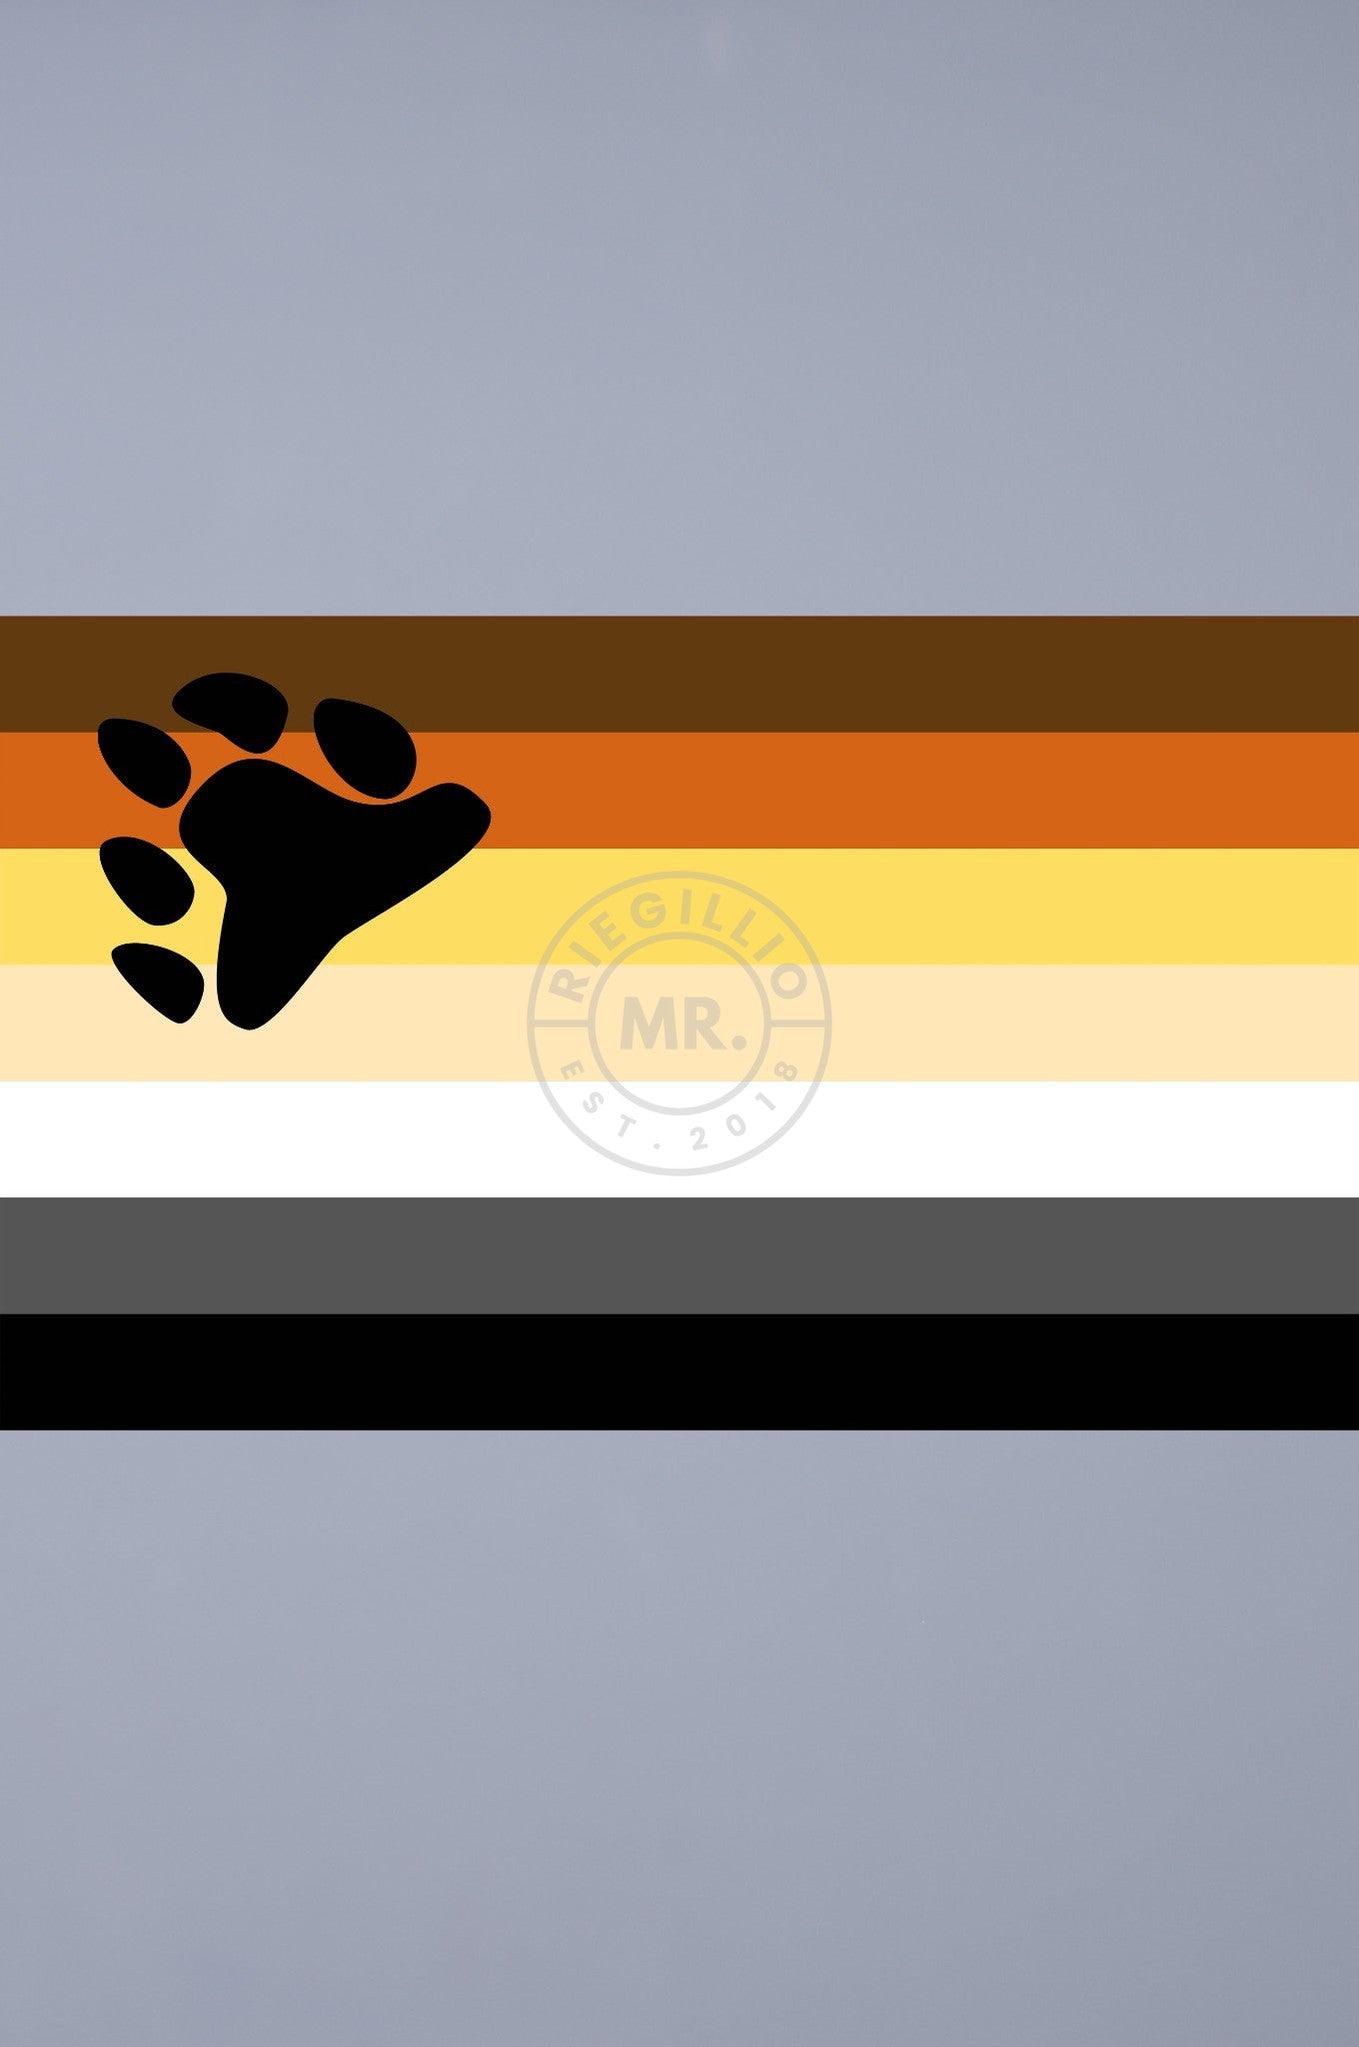 Pride Flag - Bear - 90 x 150 cm at MR. Riegillio